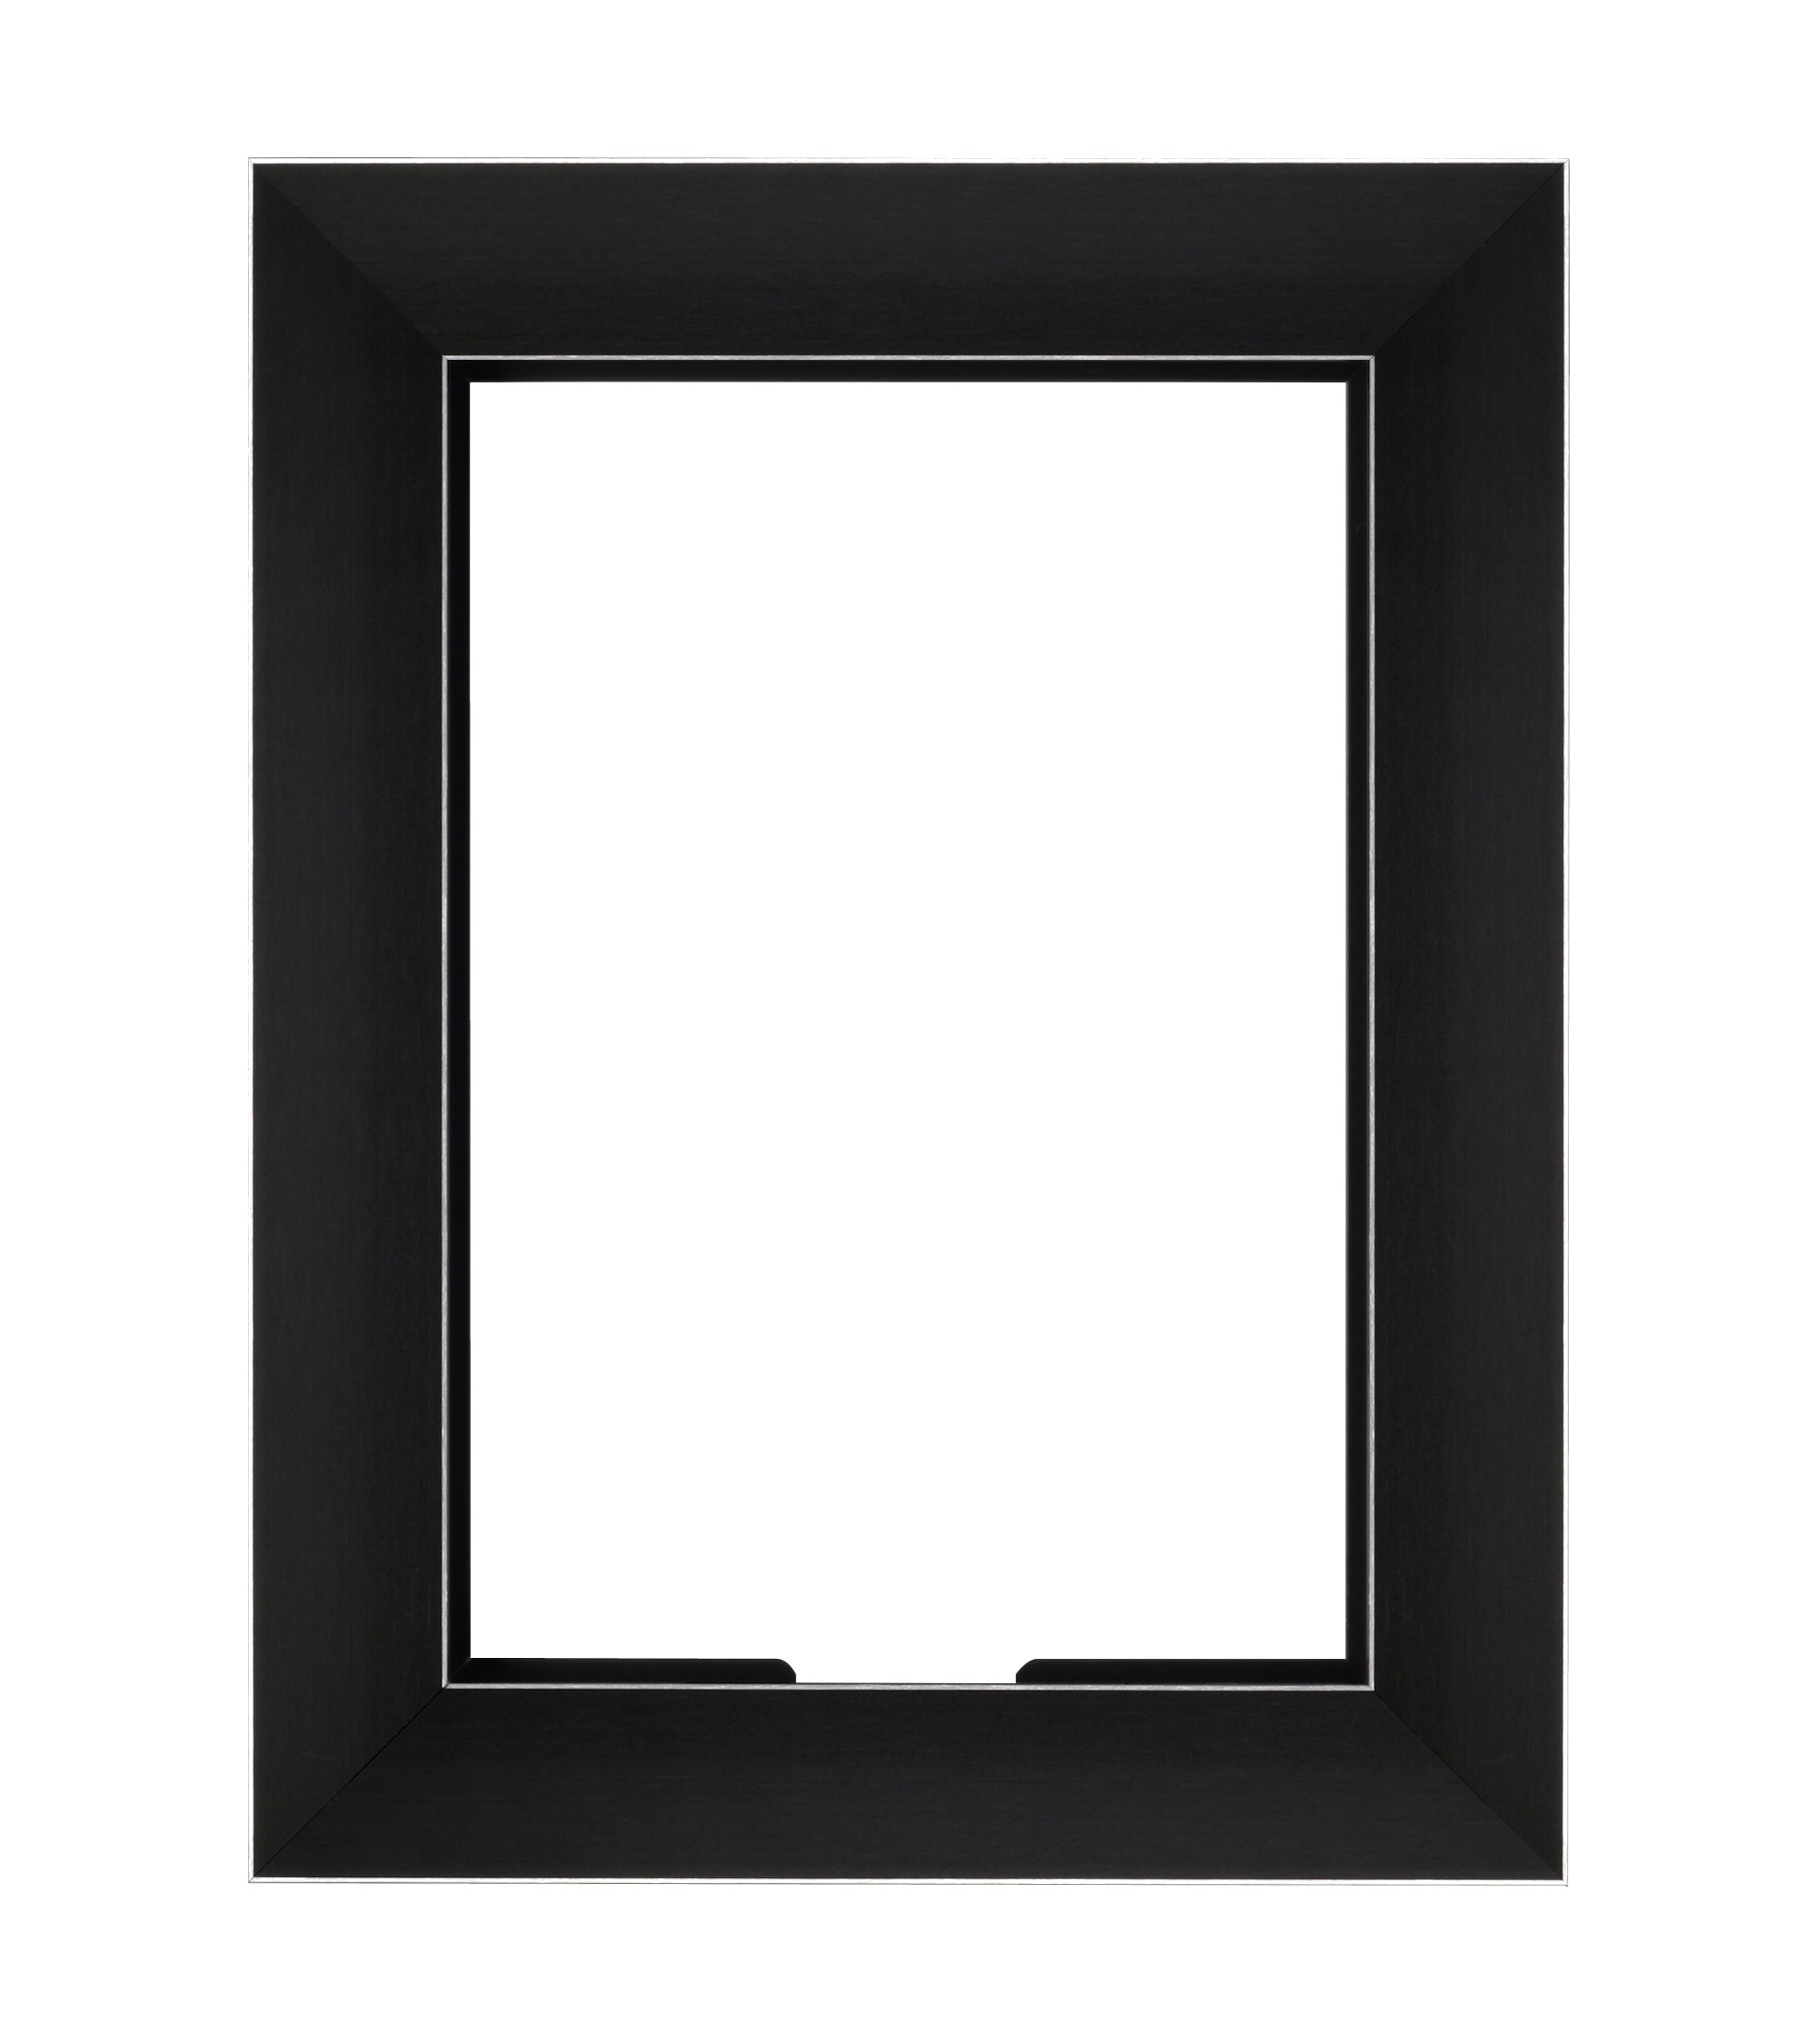 VidaMount Wall Frame - iPad 2, 3 & 4 - Black Metalline